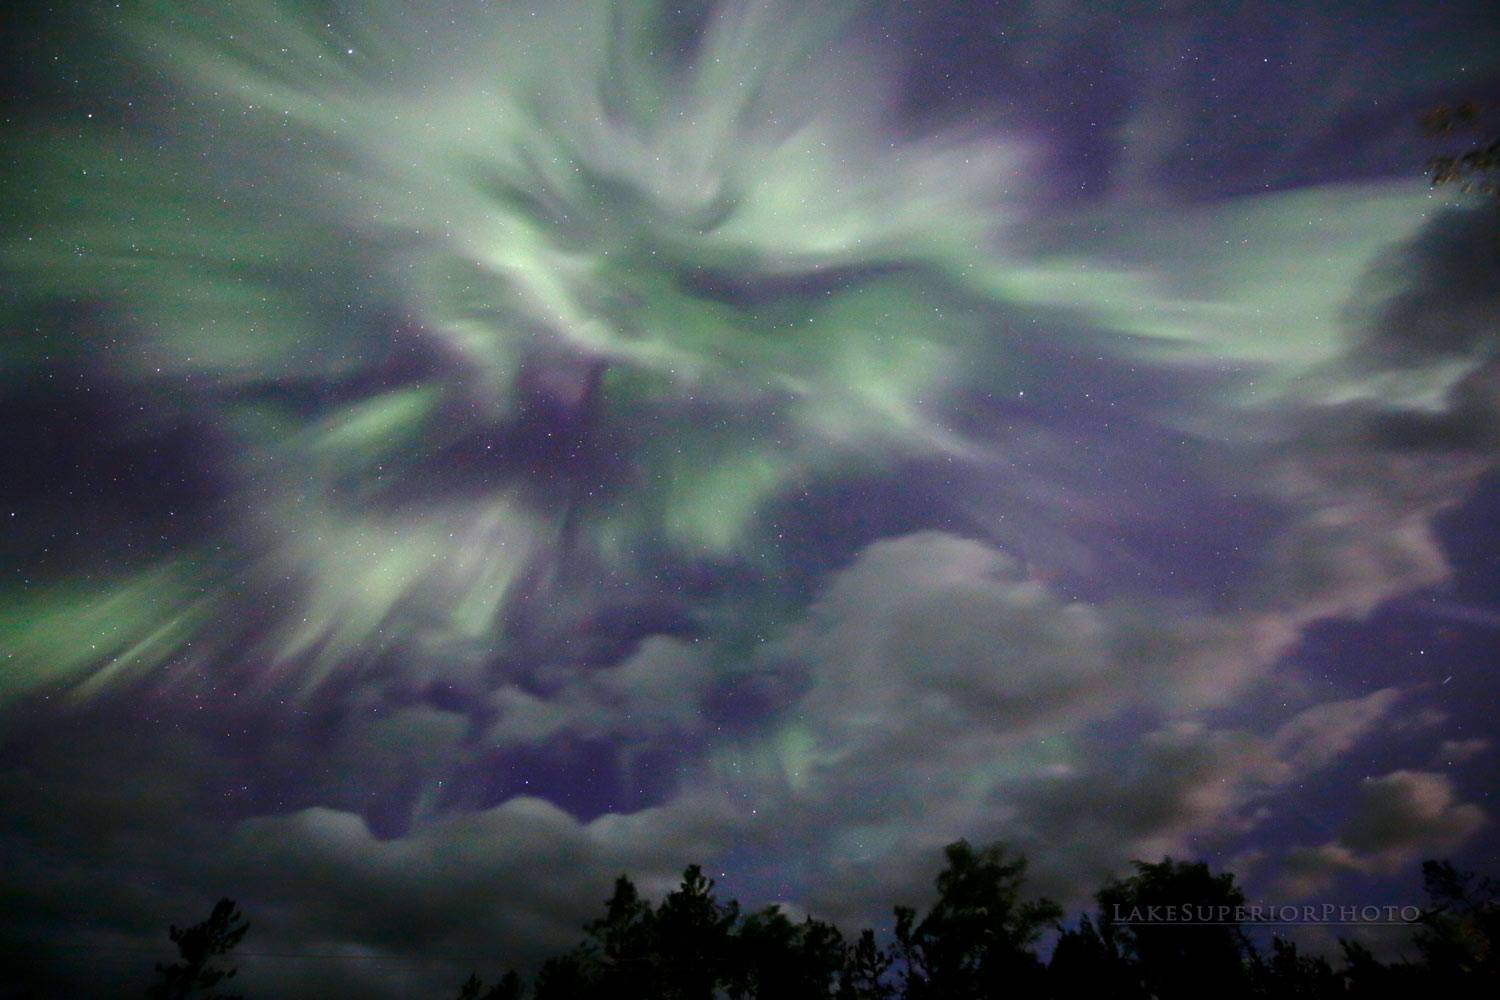 Marquette, MI view of the 23 June 2015 aurora display (Shawn Malone, LakeSuperiorPhoto.com).